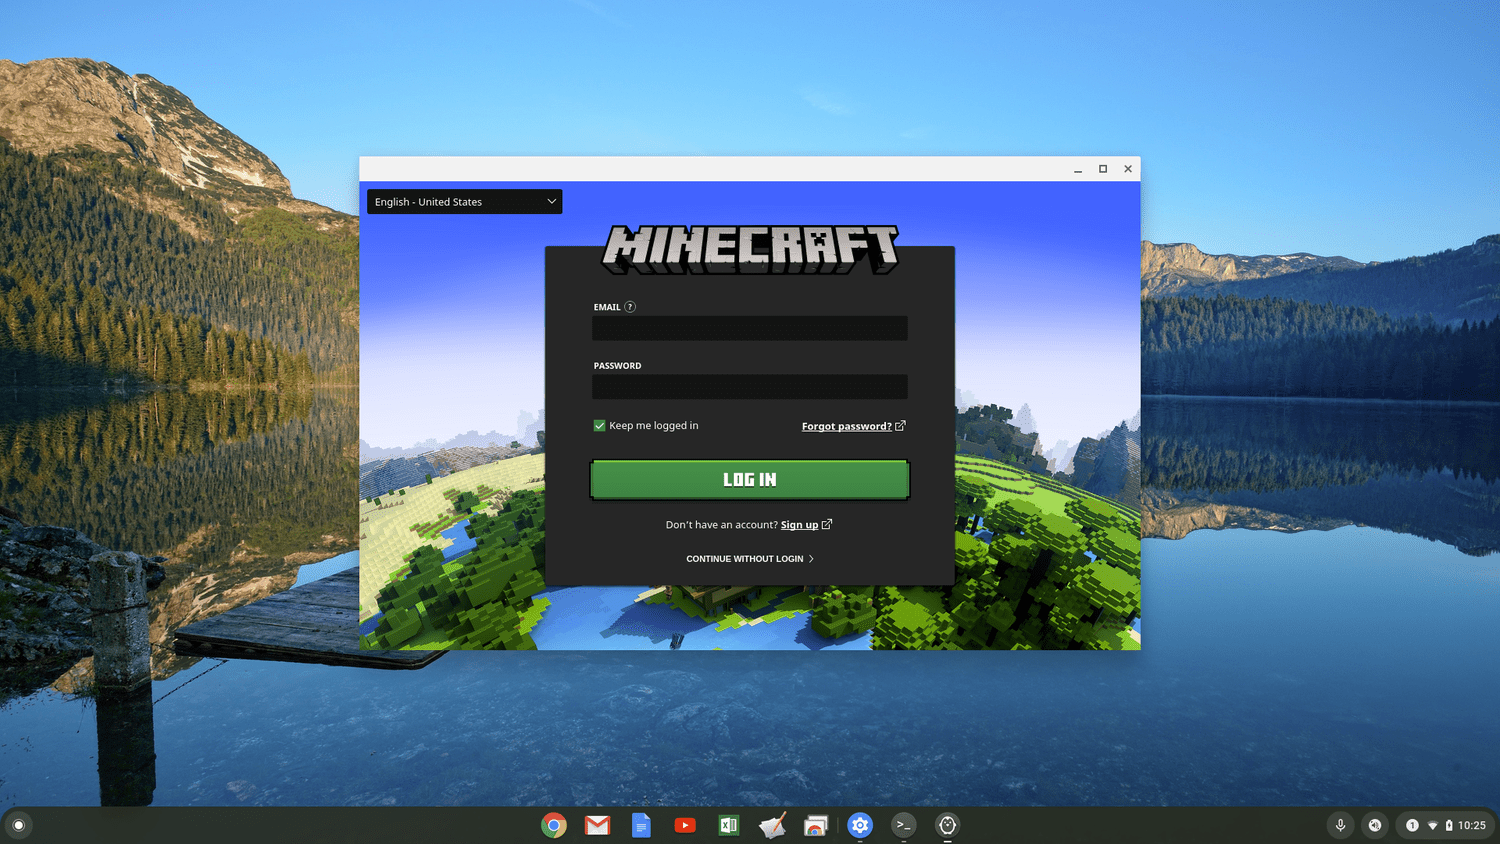 Minecraft : Bedrock Edition est officiellement disponible sur les Chromebooks